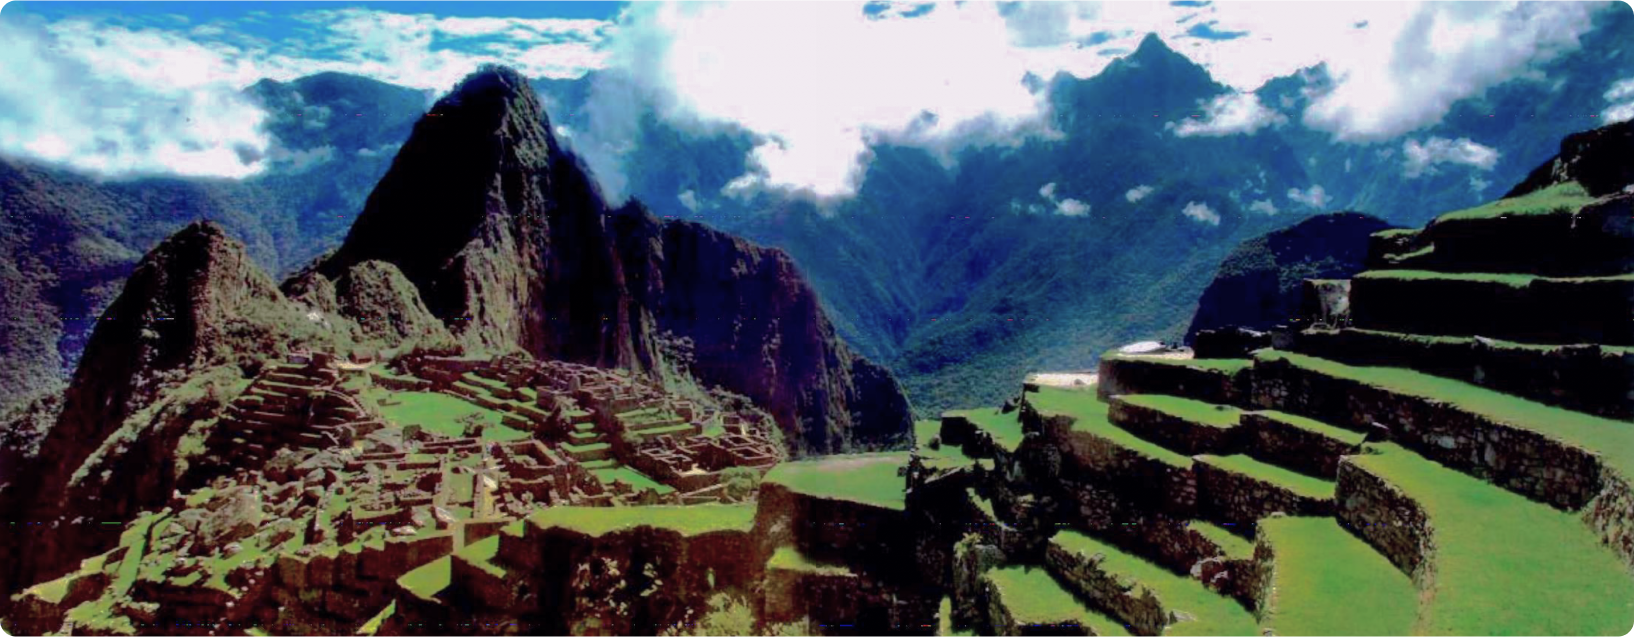 Cuzco, Del Mito a la Historia